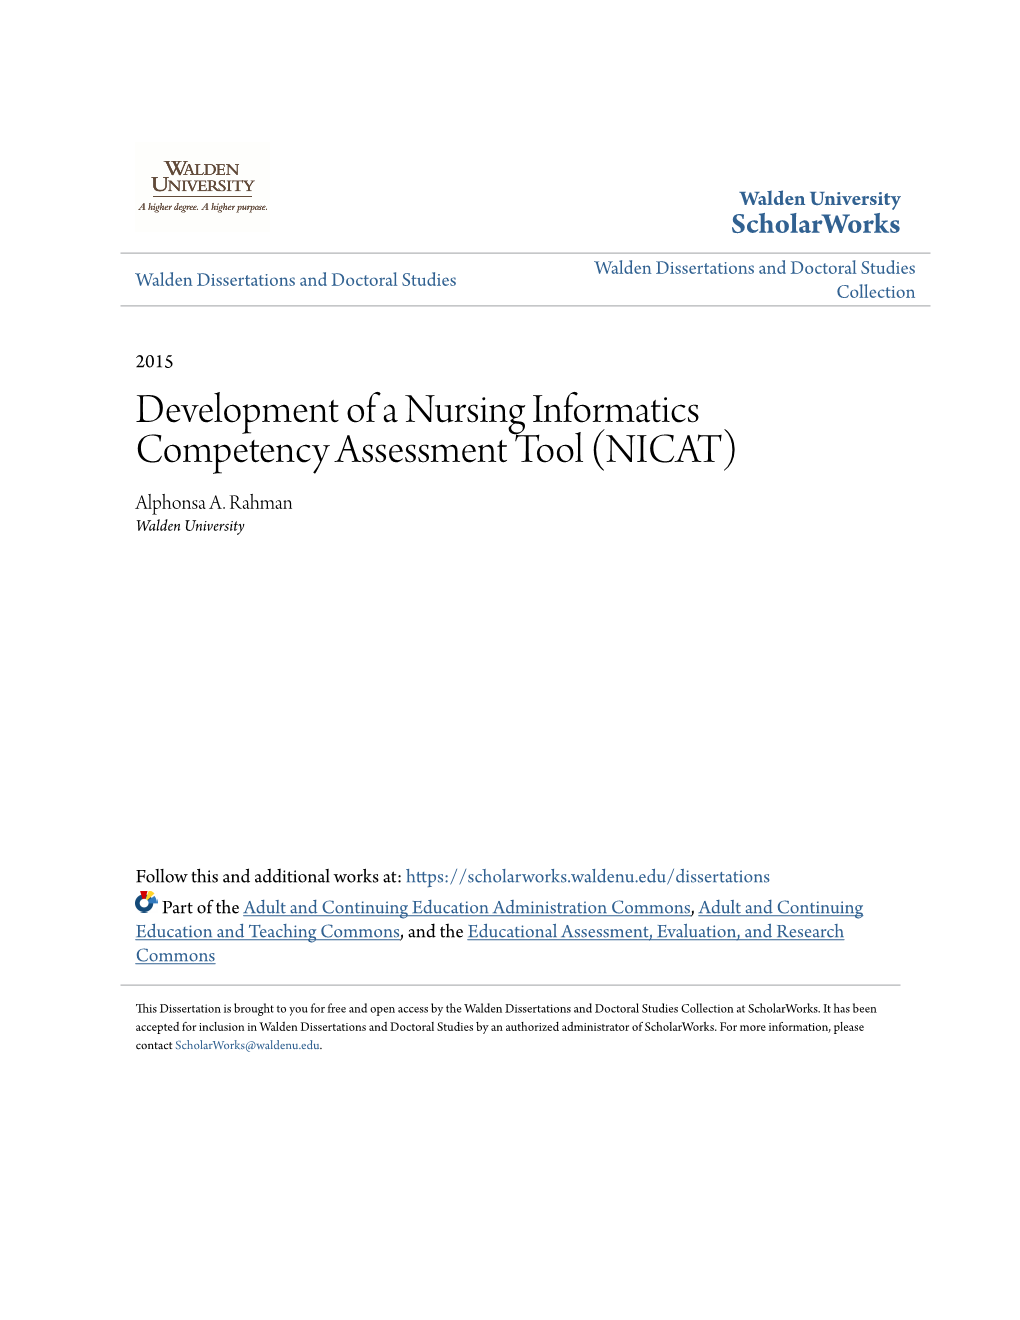 Development of a Nursing Informatics Competency Assessment Tool (NICAT) Alphonsa A